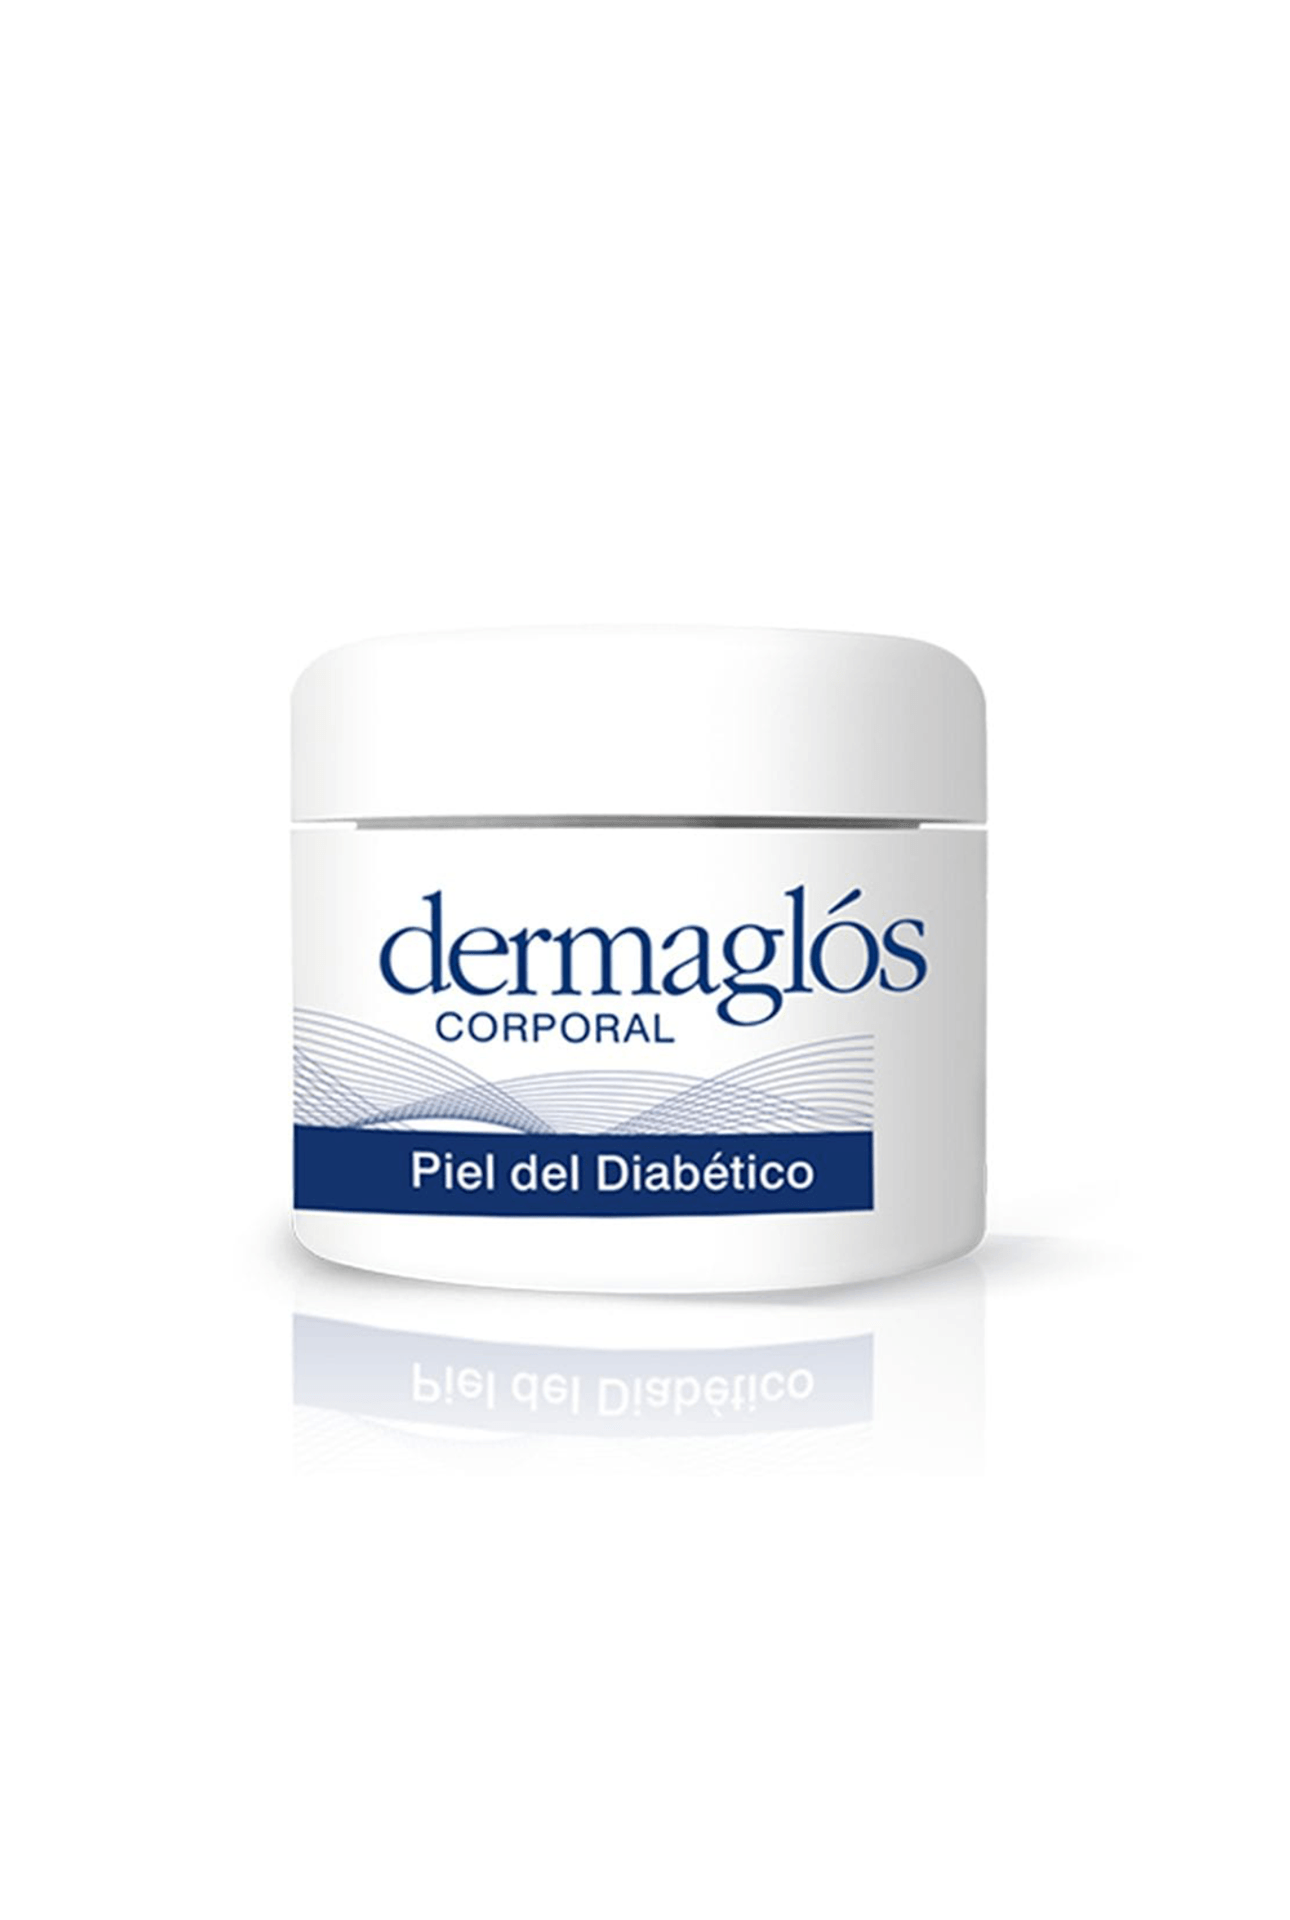 Dermaglos-57921_Dermaglos-Crema-Corporal-Piel-Del-Diabetico-x-100-gr_img1-7793742007996